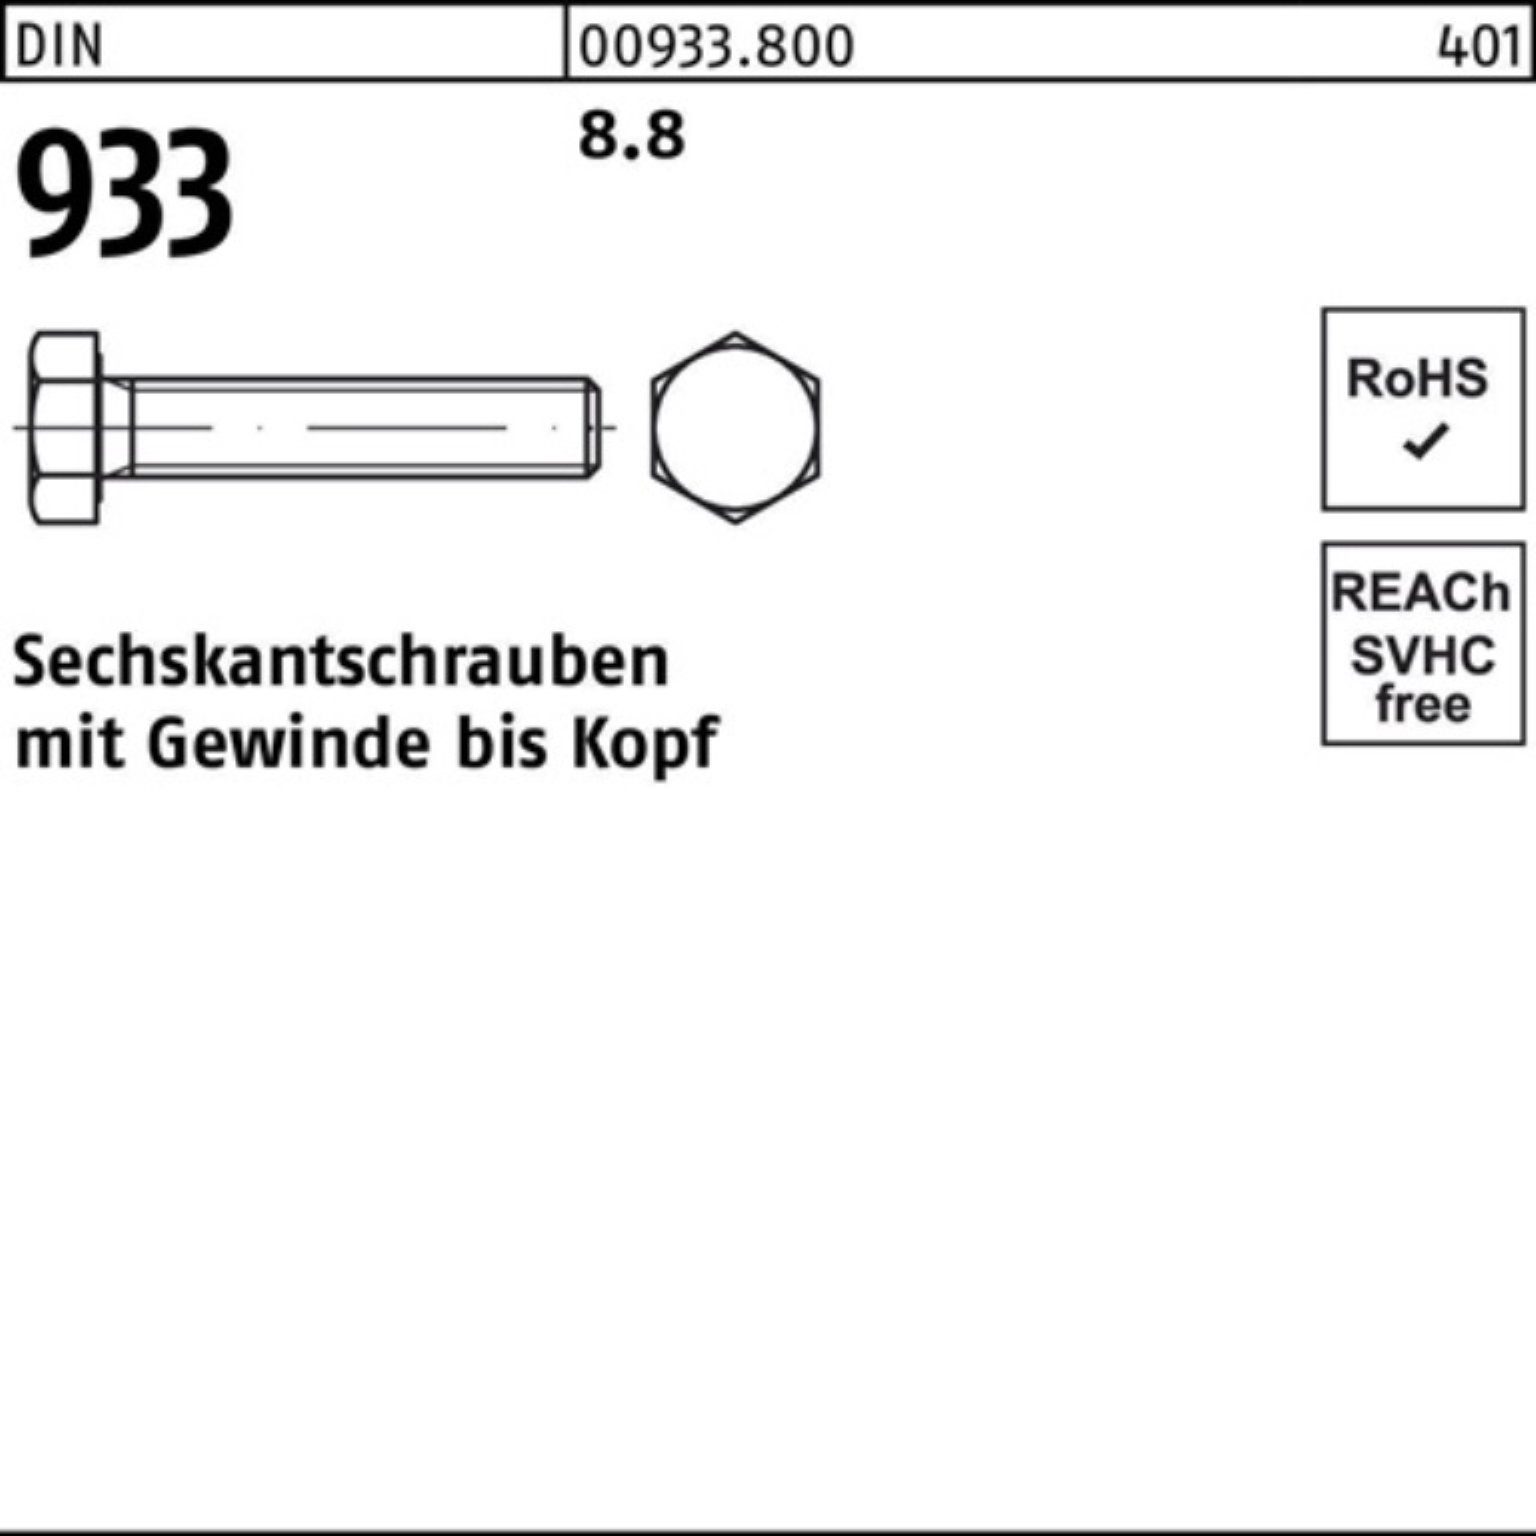 Reyher Sechskantschraube 100er 933 130 Sechskantschraube Pack DIN 933 M6x DIN VG 100 8.8 Stück